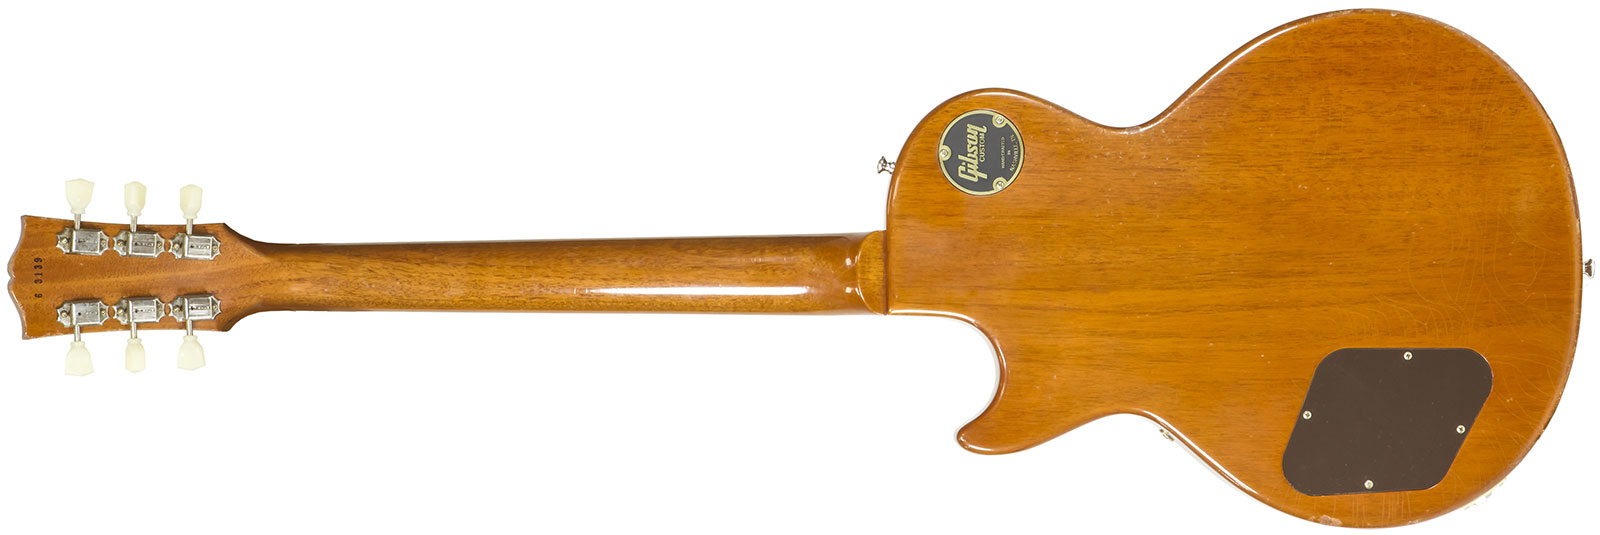 Gibson Custom Shop M2m Les Paul 1956 2h Ht Rw #63139 - Murphy Lab Light Aged Antique Gold - Guitarra eléctrica de corte único. - Variation 1